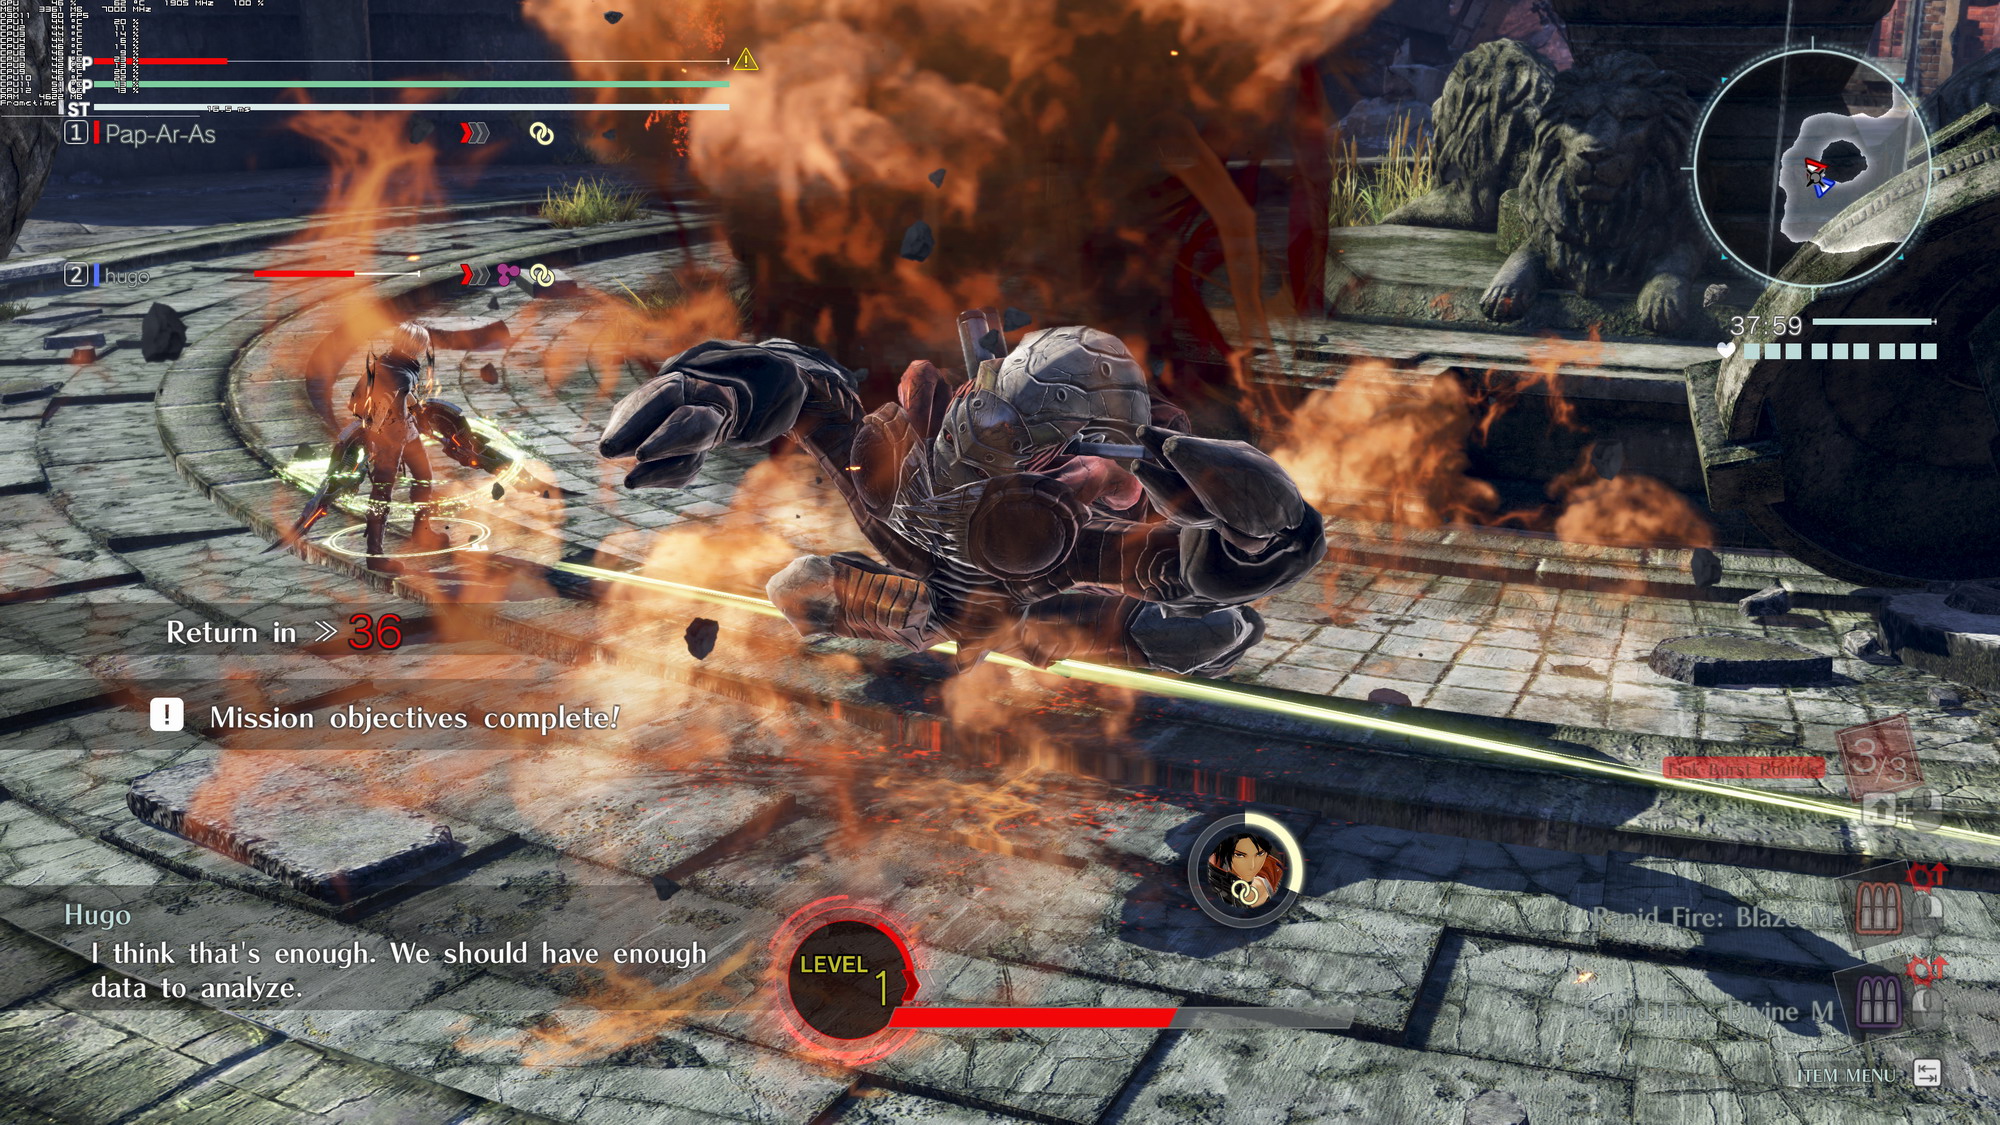 《噬神者3》PC版性能截圖 4K最高畫質2080Ti無壓力